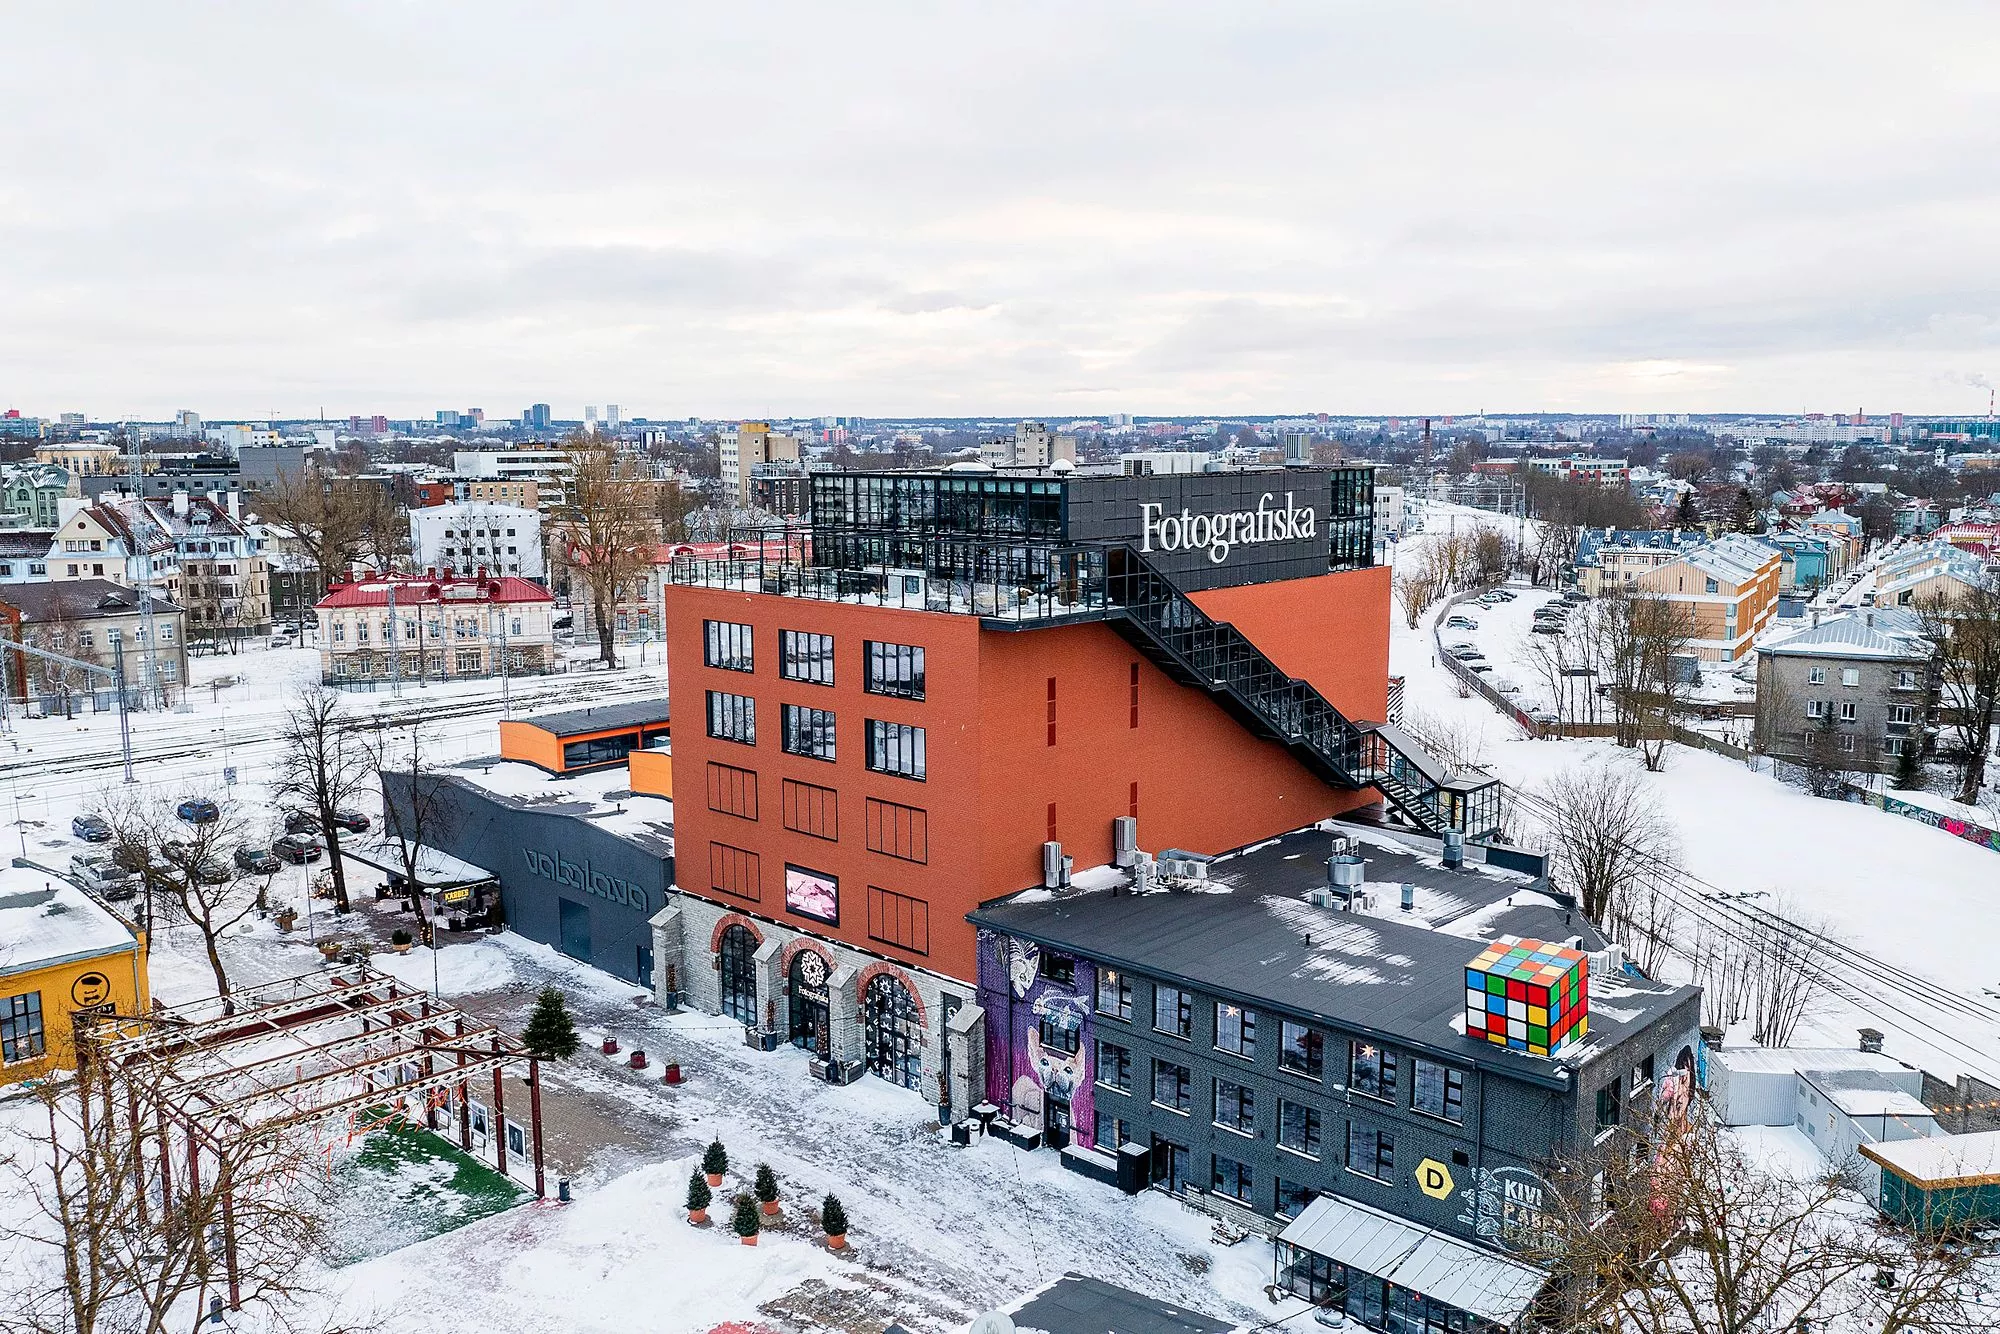 Fotografiska-museosta on tullut Telliskiven ja Tallinnan uusi maamerkki. Museokauppa on innostava, ja katolla sijaitsevasta ravintolasta on hieno näköala moneen suuntaan.